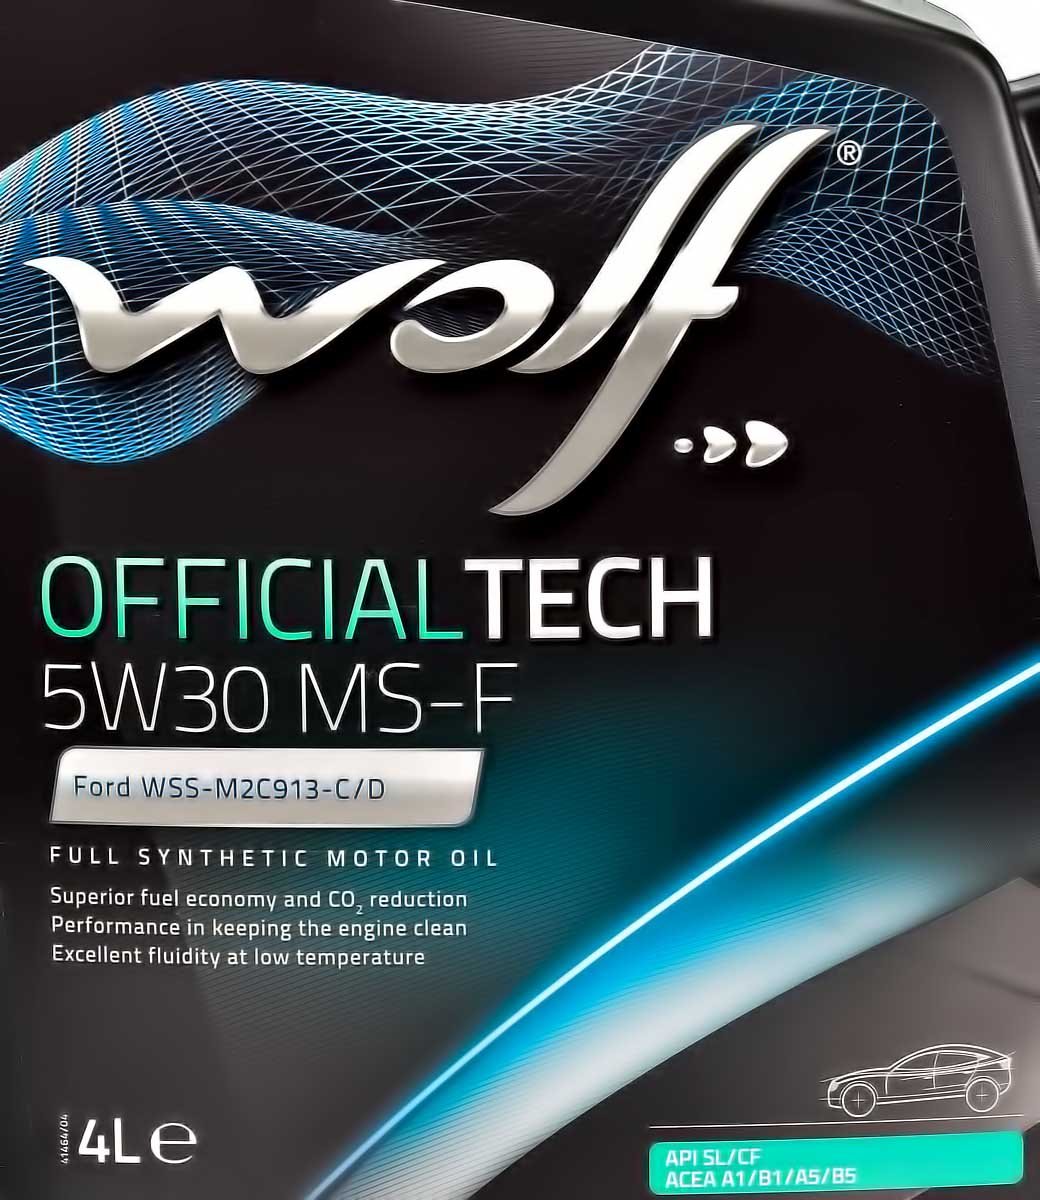 Моторное масло Wolf Officialtech MS-F 5W-30 4 л на Citroen Xsara